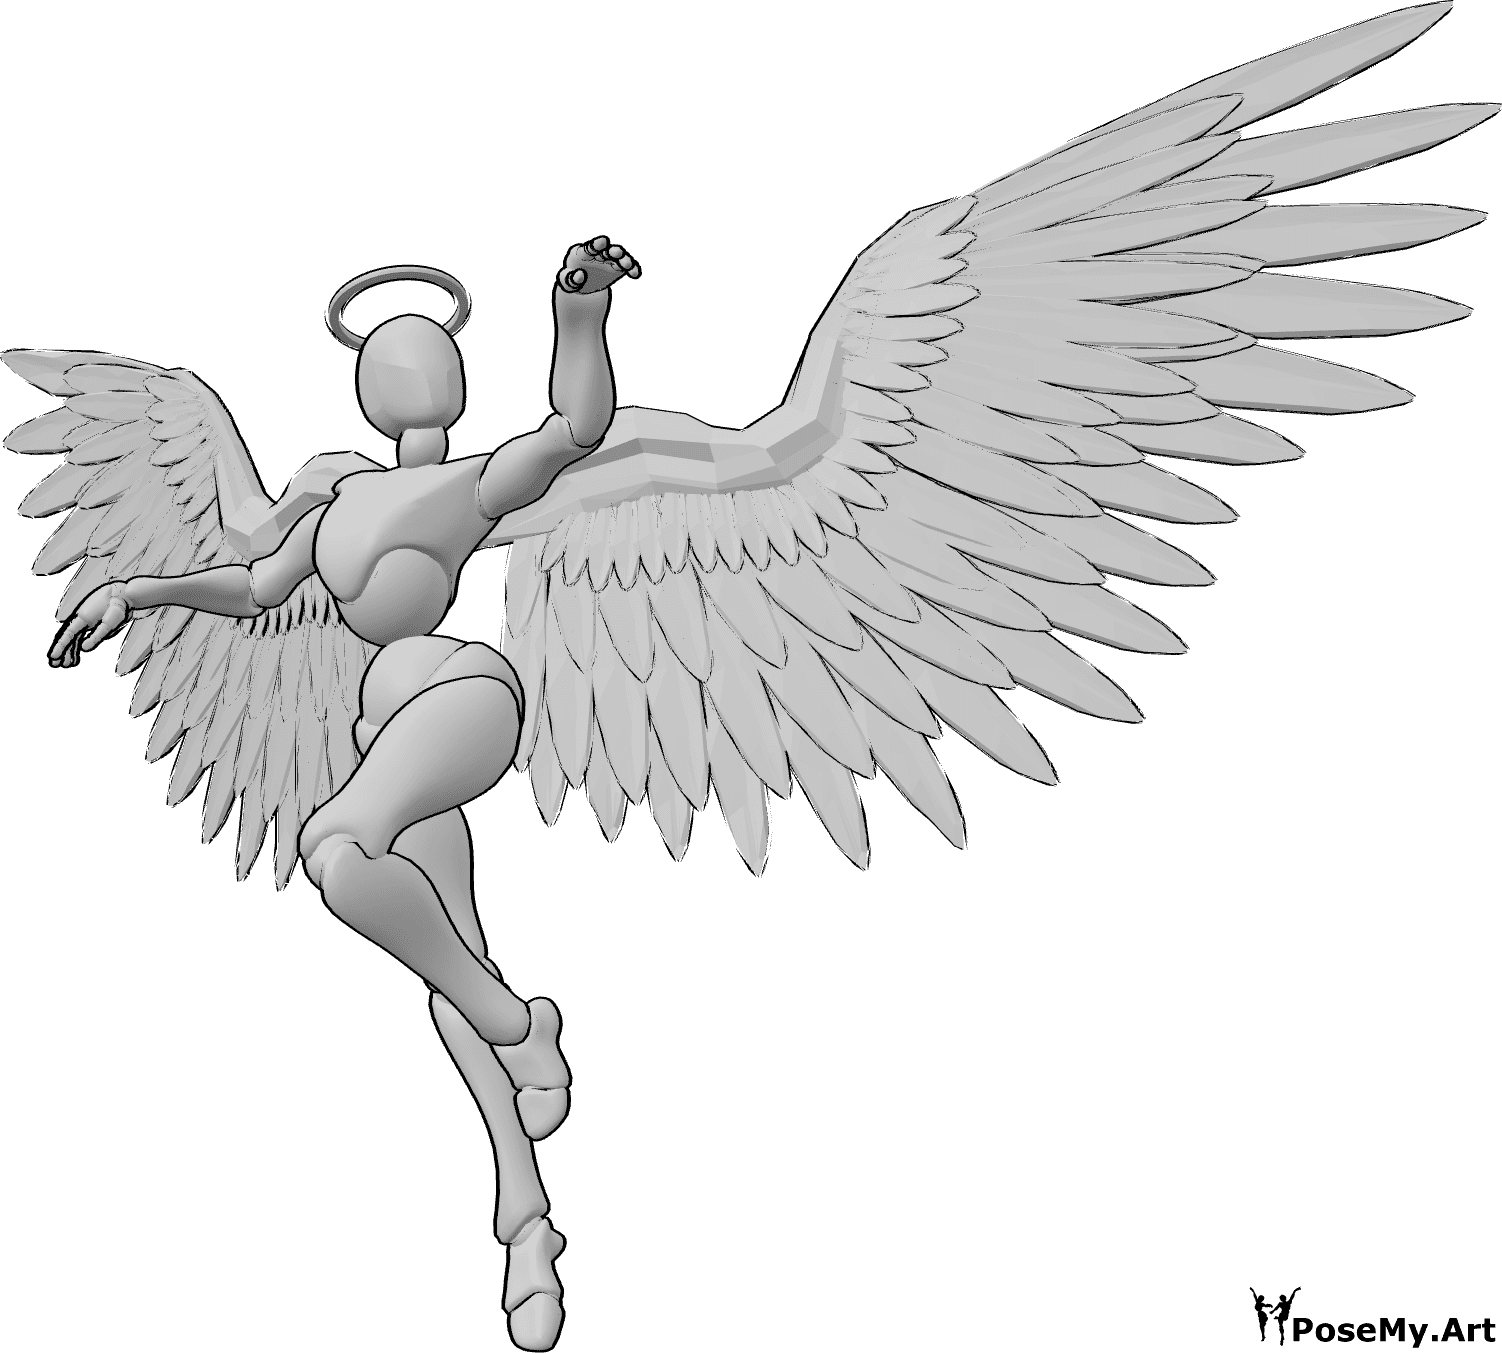 Referencia de poses- Ángel femenino bailando - Un ángel femenino vuela y baila en el aire, levantando las manos y mirando a la izquierda.